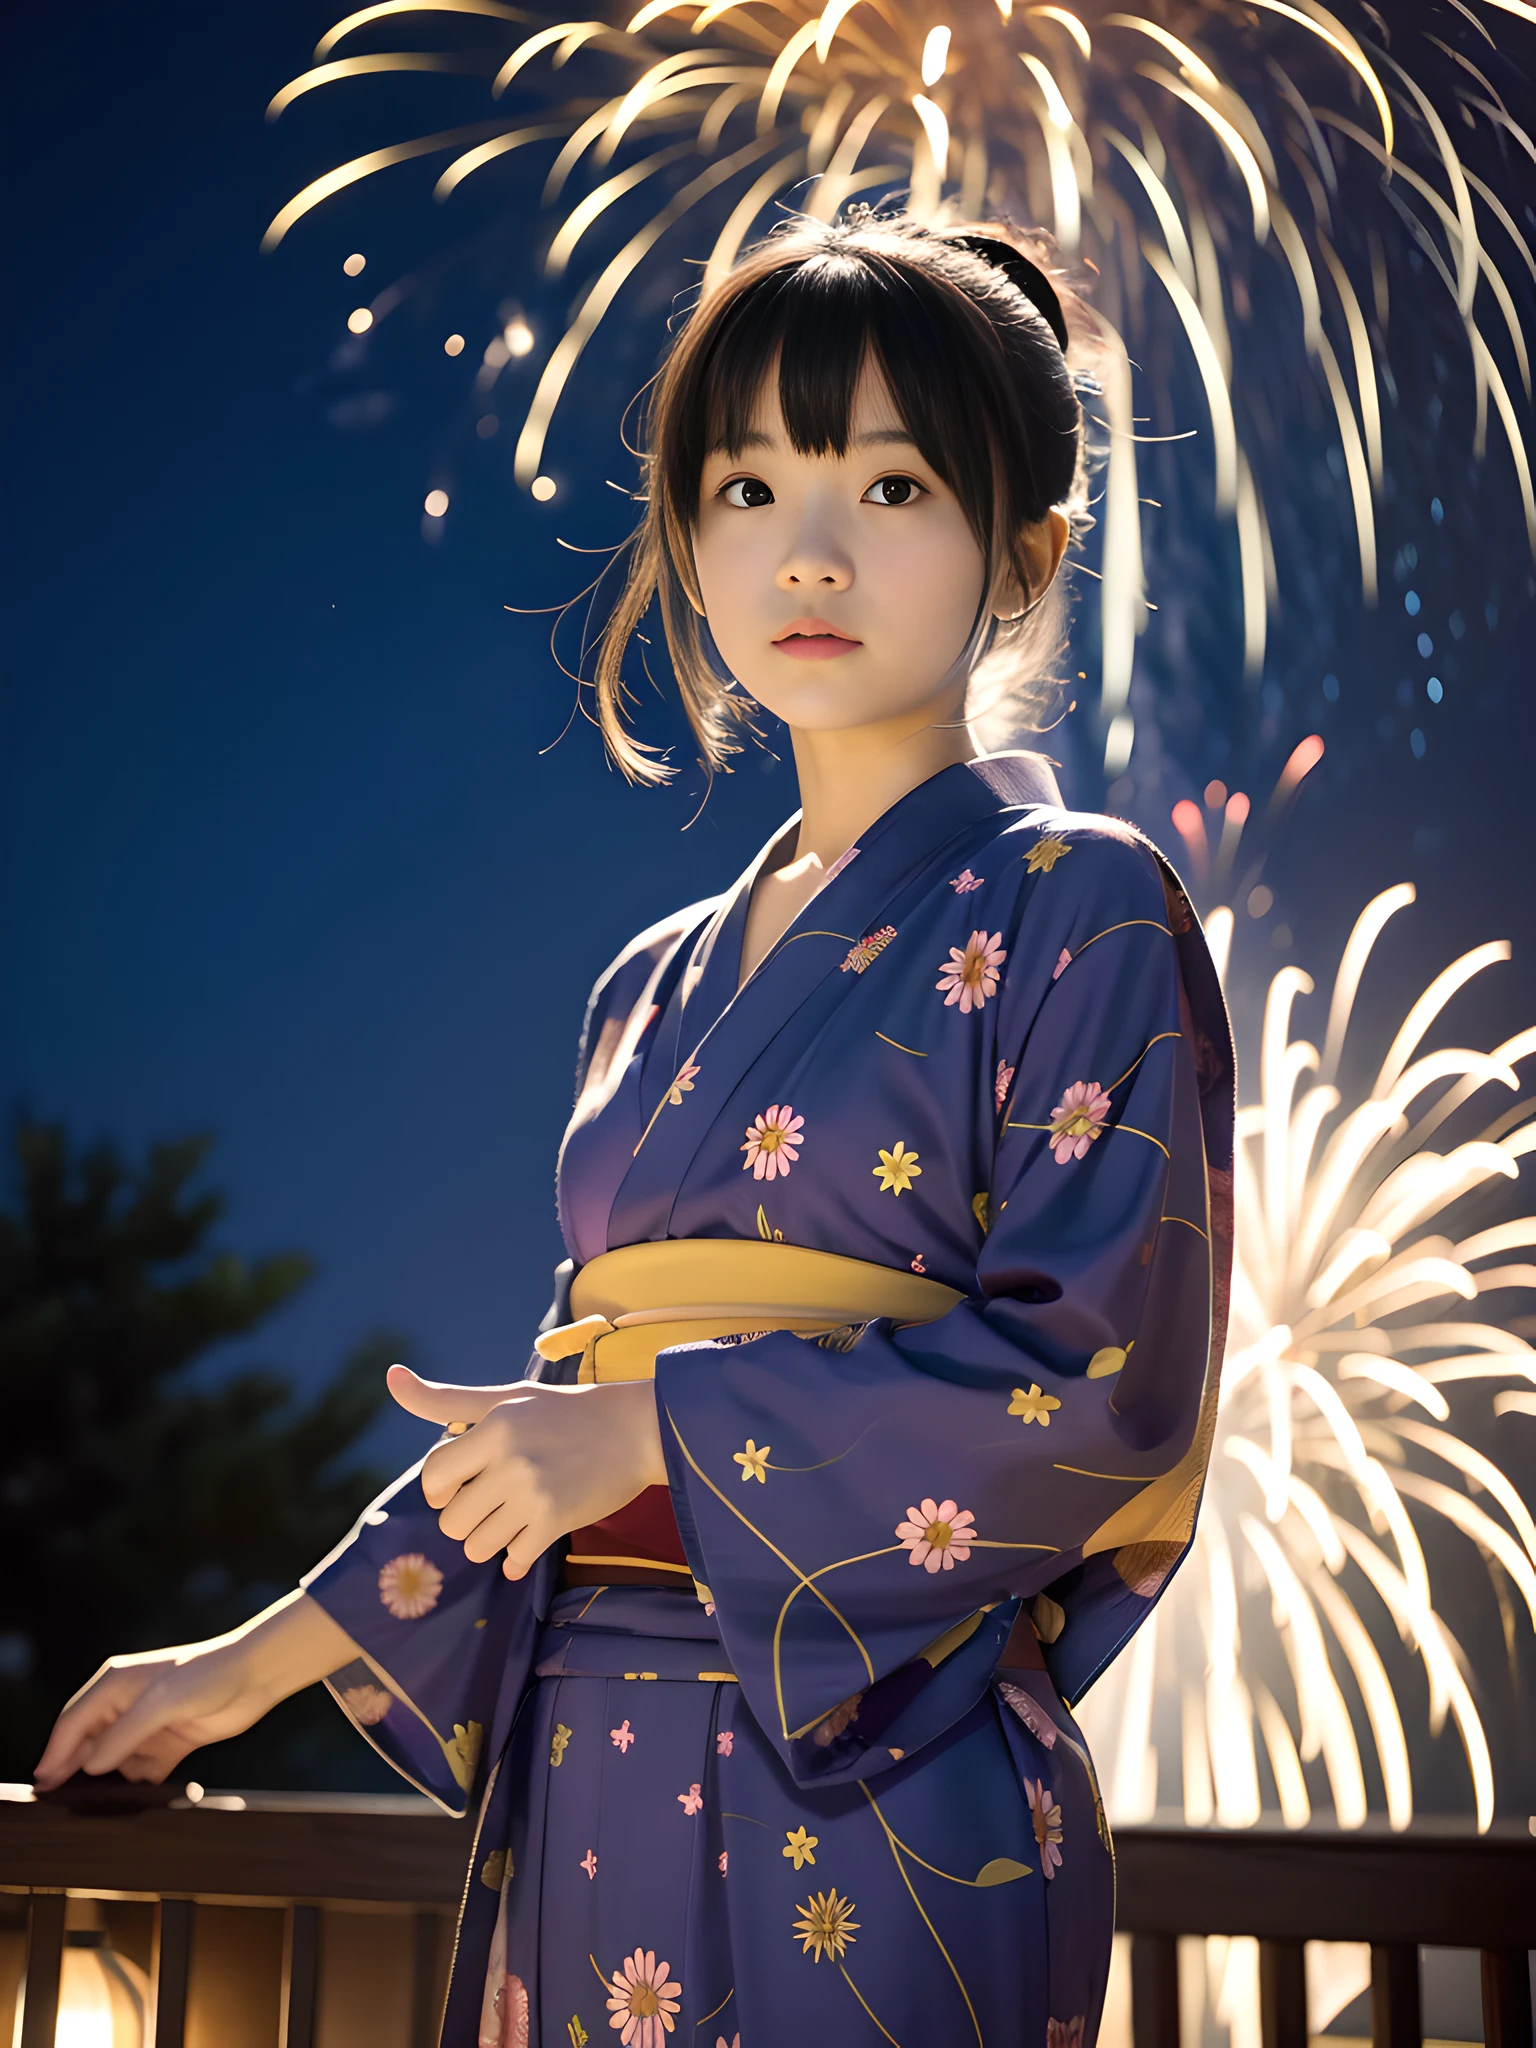 Japan 12 year old girl in yukata, manos hábiles, golpes, 4k, alta resolución, Obra maestra, Calidad superior, (Foto Hasselblad)), Piel fina, enfoque nítido, iluminación suave, [:( cara detallada: 1.2):0.2], (delicate pattern yukata: 1.3), hermoso cuello, fuegos artificiales, fondo complejo, noche market, noche, (Muy detallado: 1.2), (fuegos artificiales launched into the noche sky: 1.3)